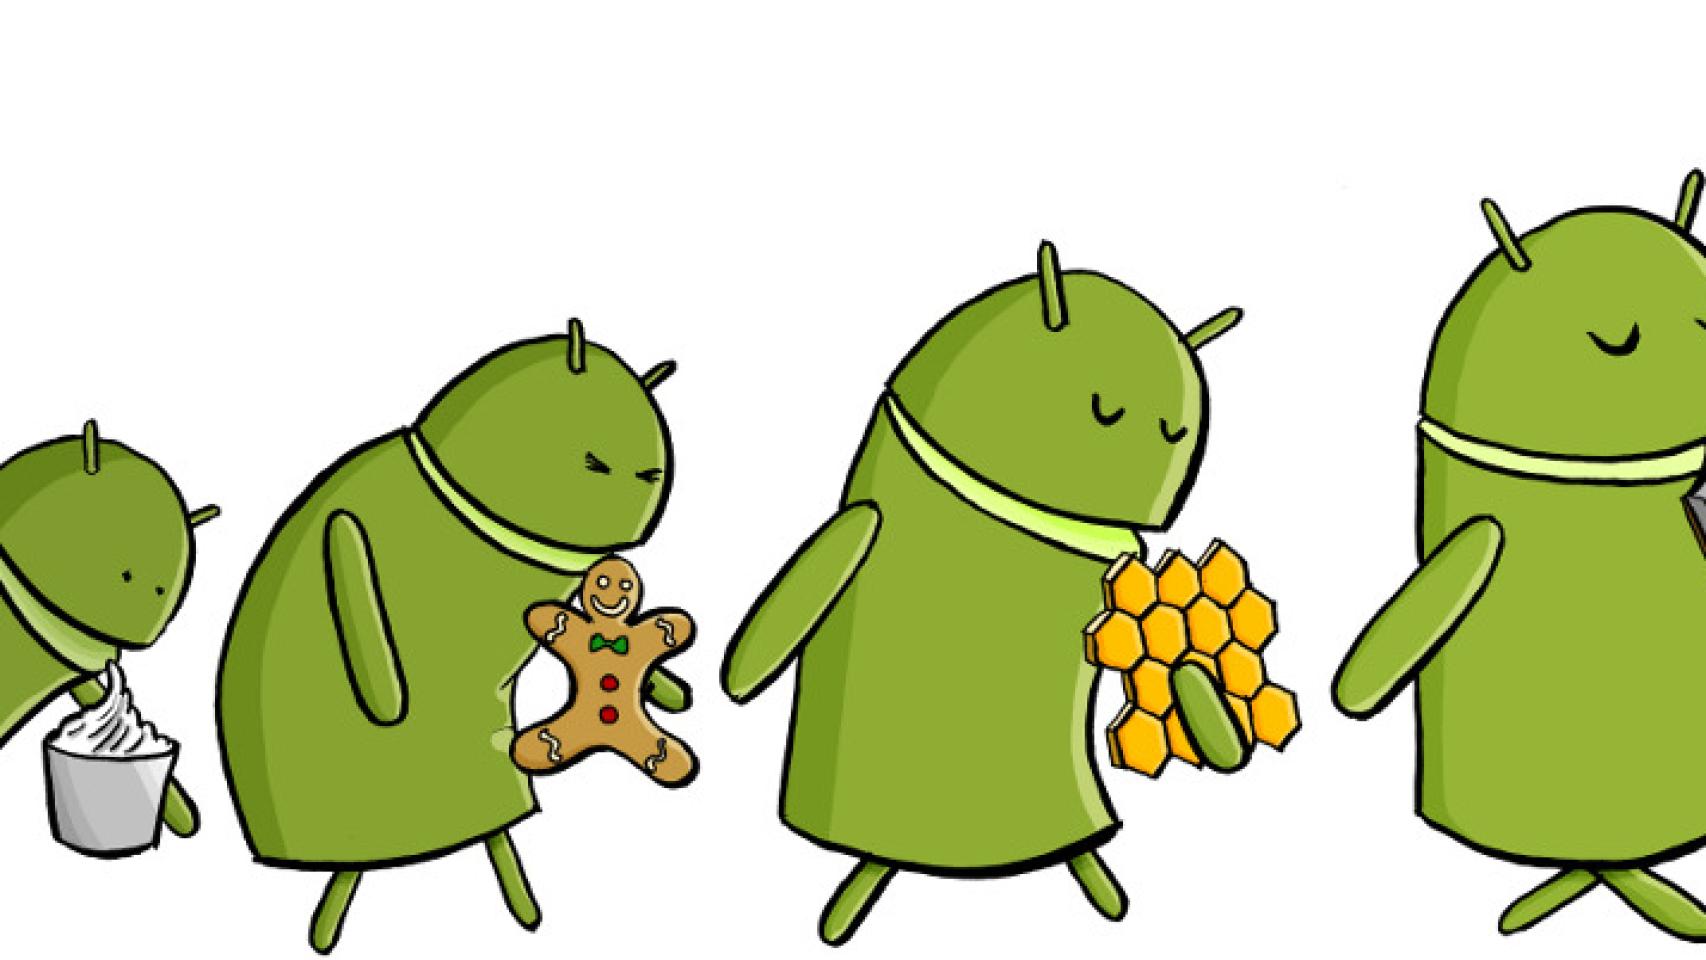 Android Key Lime Pie confirmado en un dibujo de un empleado de Google